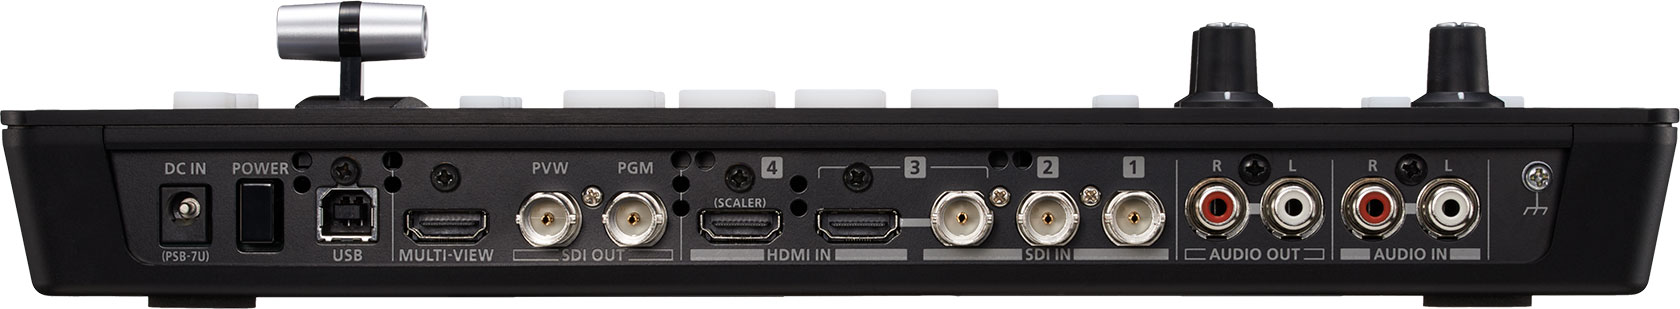 Roland Pro A/V - V-1SDI | 3G-SDI Video Switcher